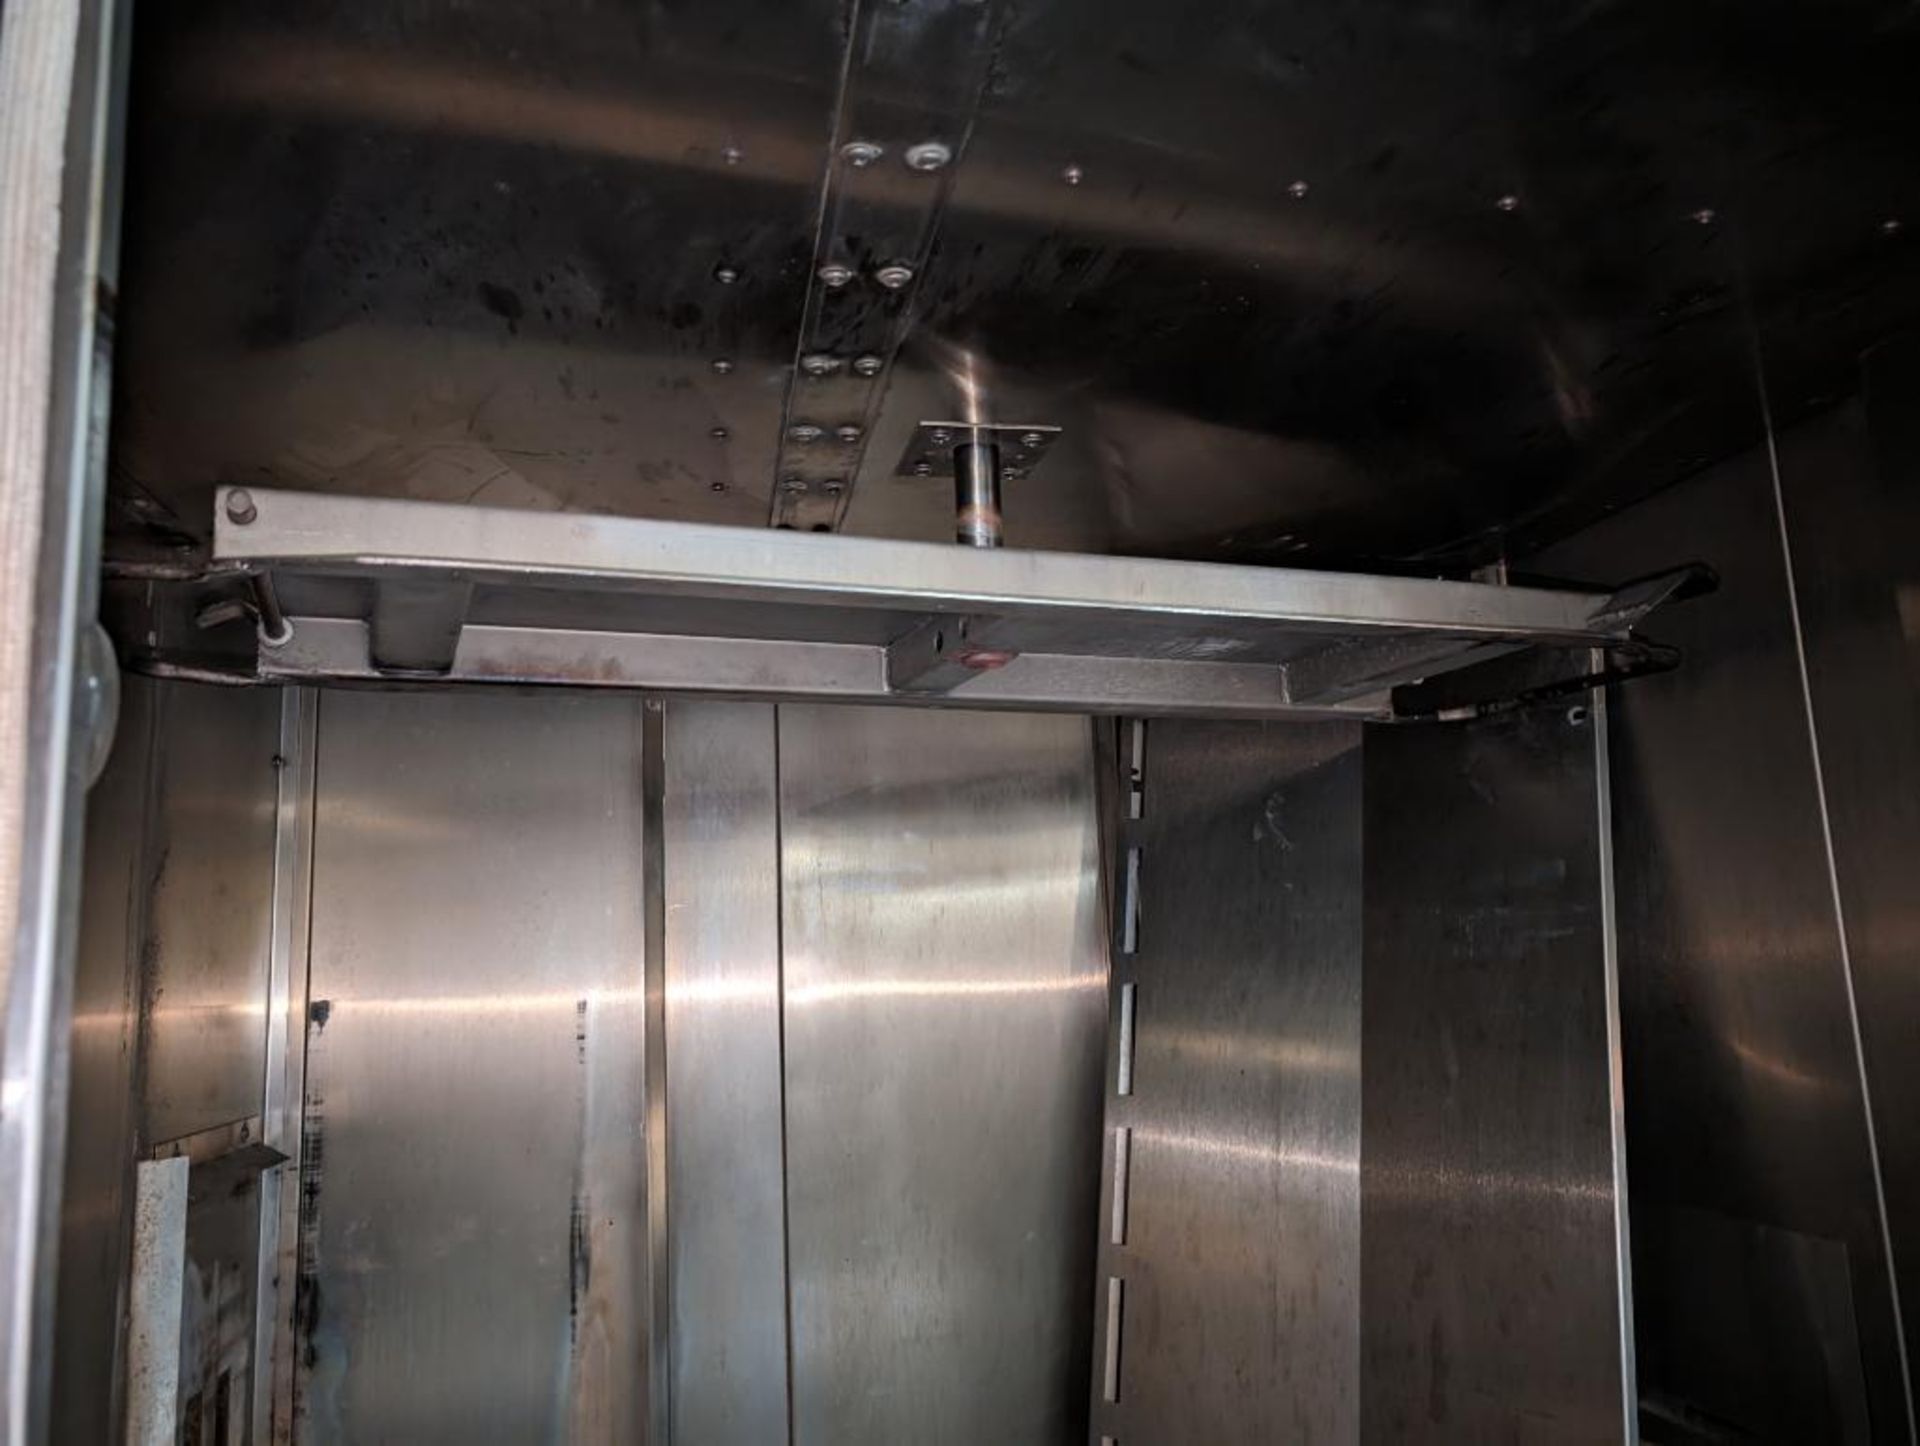 Hobart double rack oven - Image 3 of 10